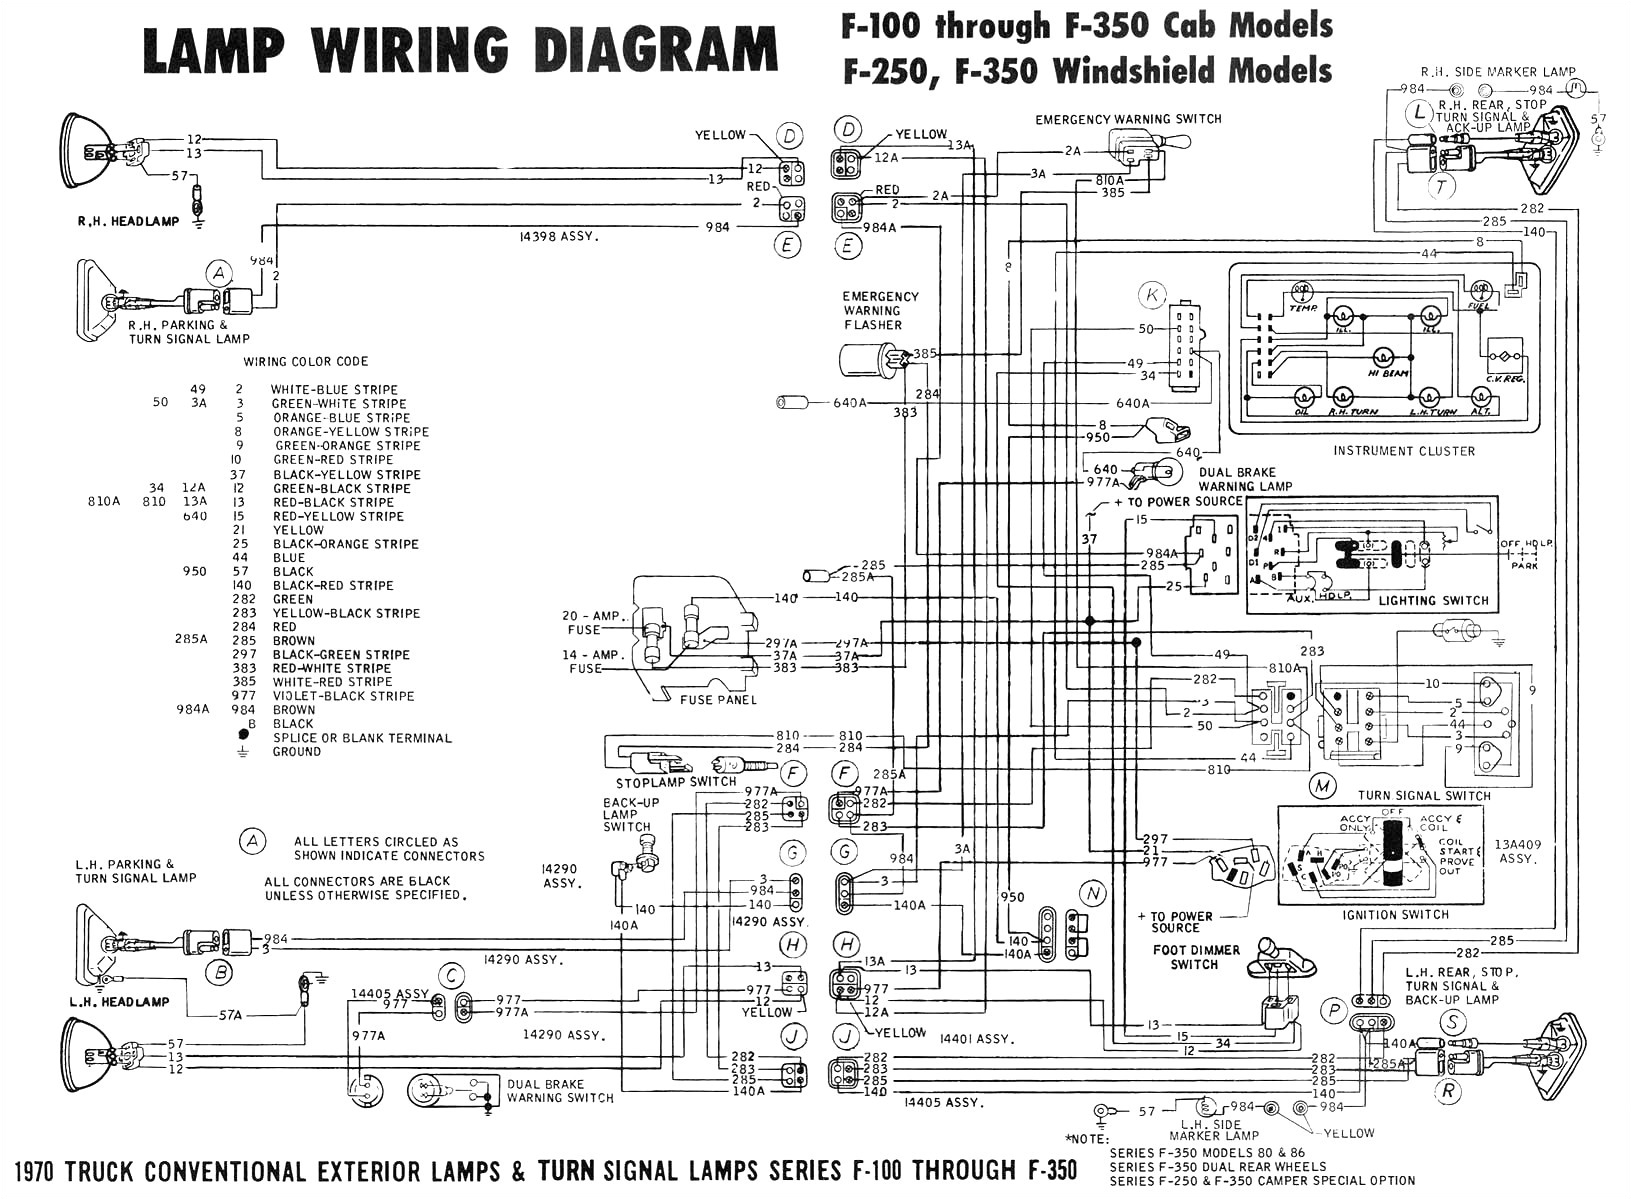 wiring diagram amc marlin fastback wiring diagram sheet wiring diagram amc marlin fastback